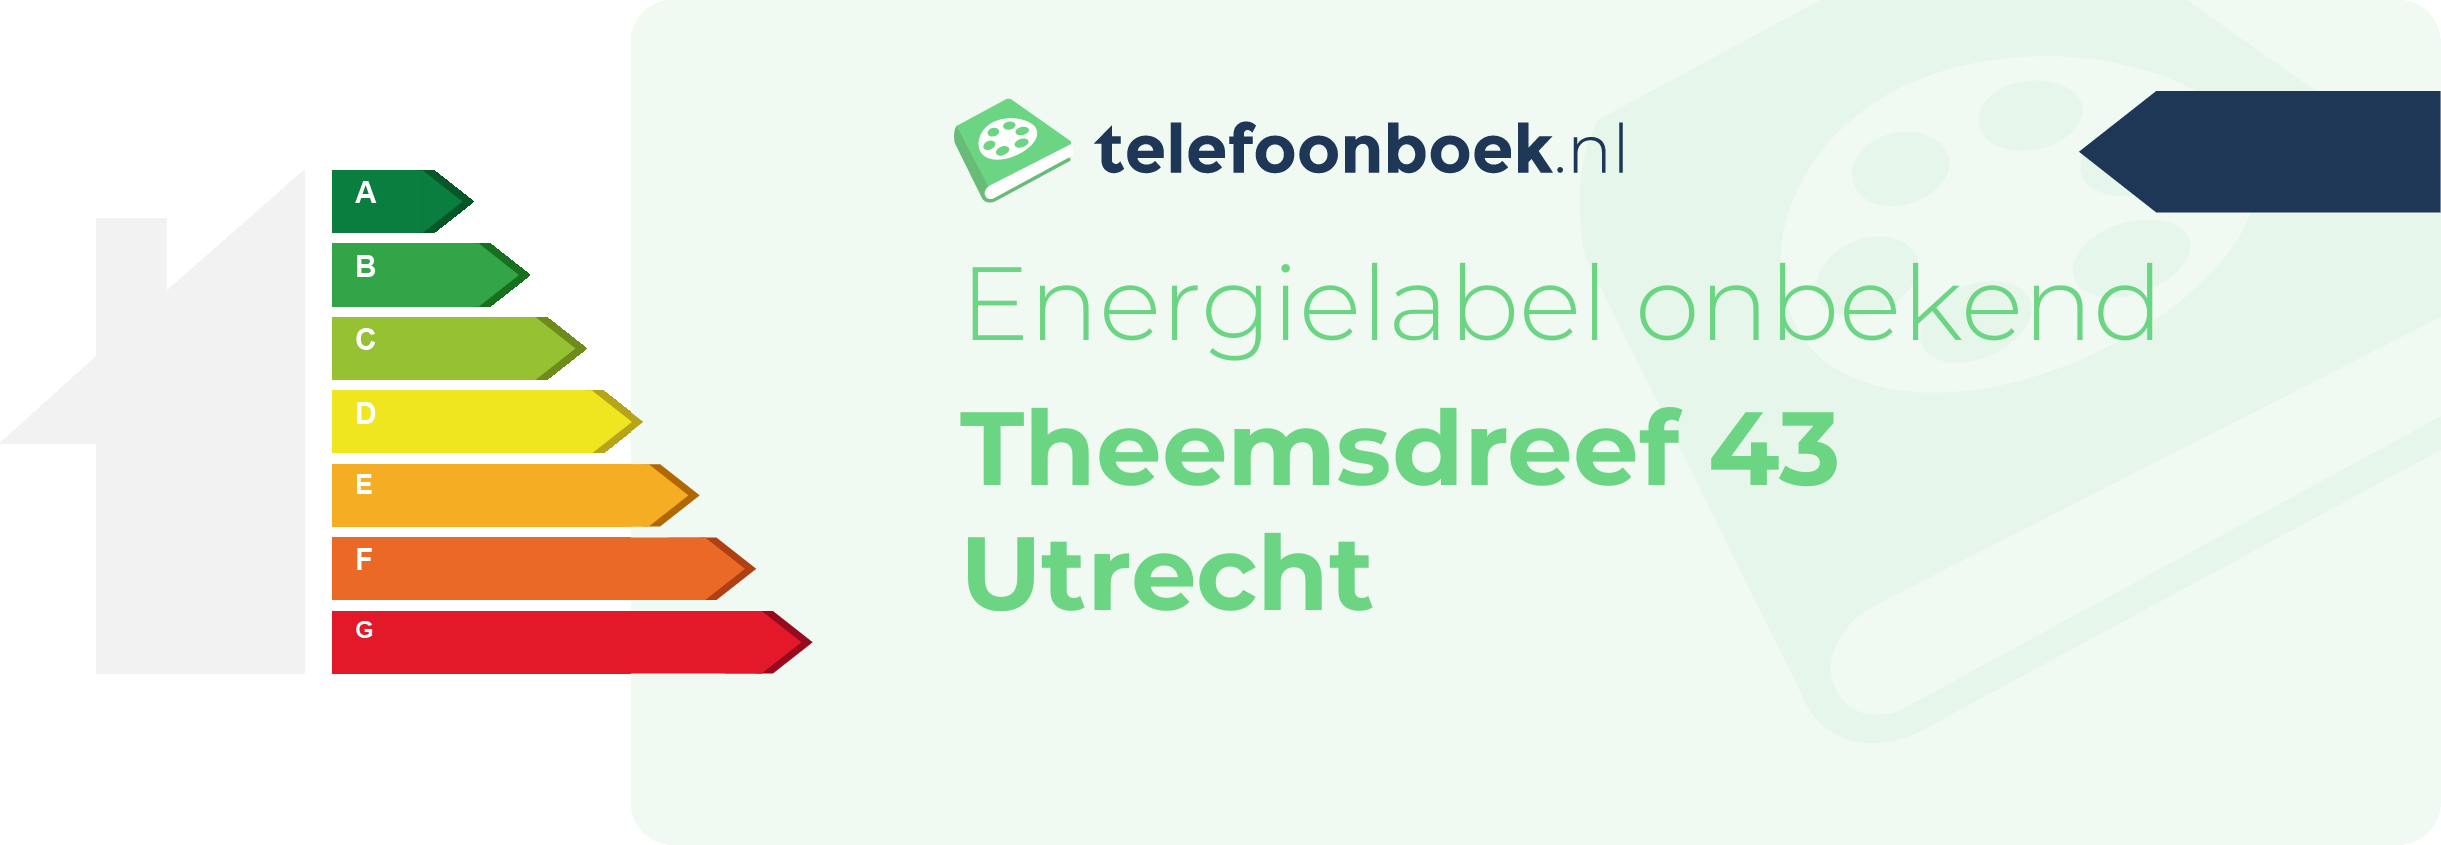 Energielabel Theemsdreef 43 Utrecht